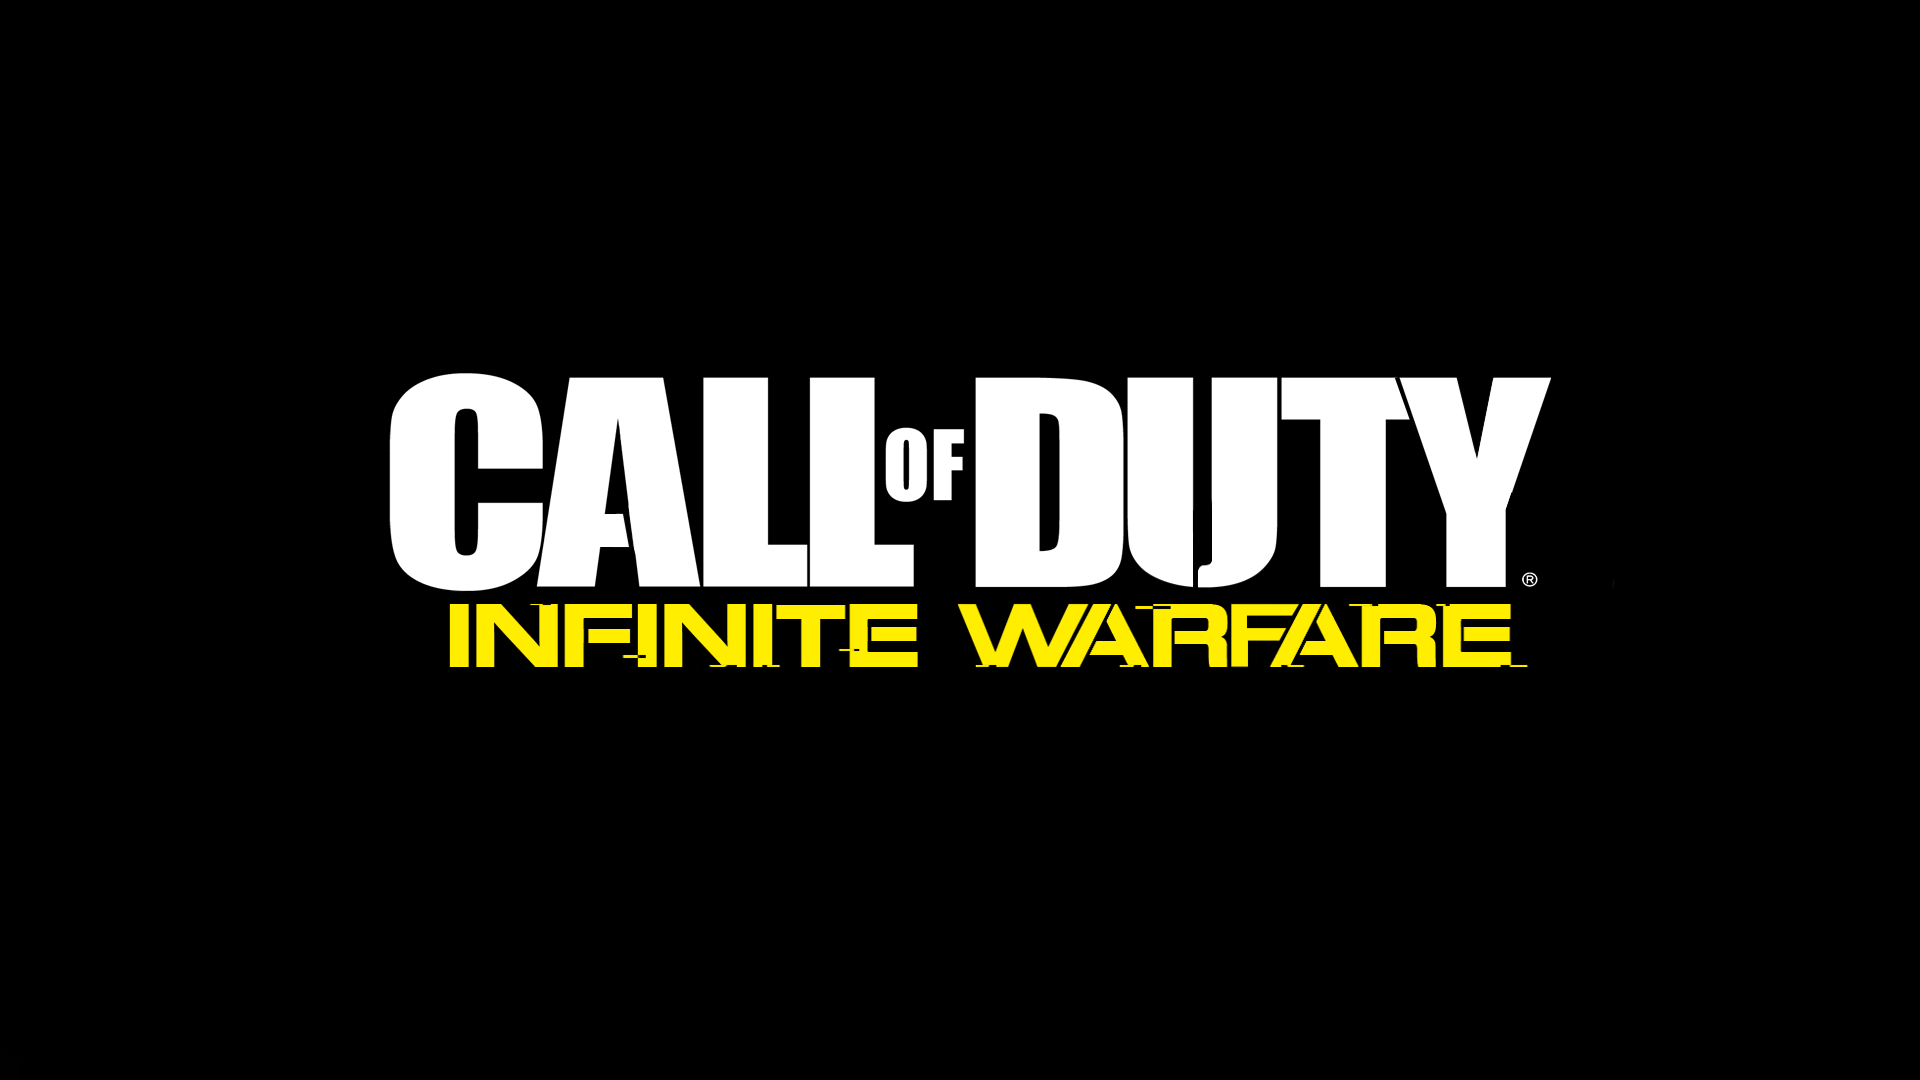 Call Of Duty: Infinite Warfare Wallpaper, Picture, Image